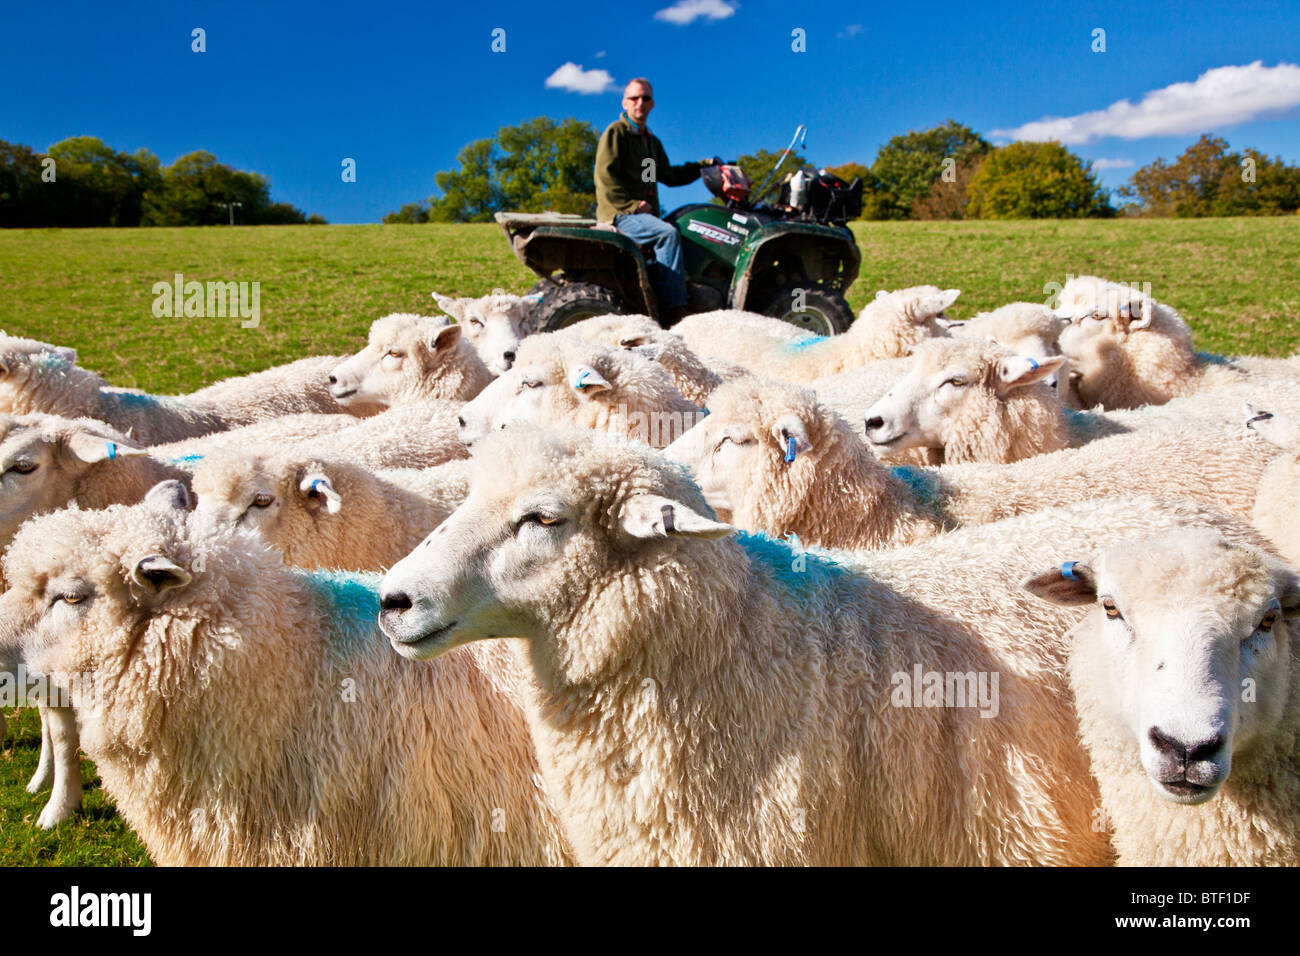 Un día moderno pastor en quad controlar un rebaño de ovejas romney en un campo. Foto de stock